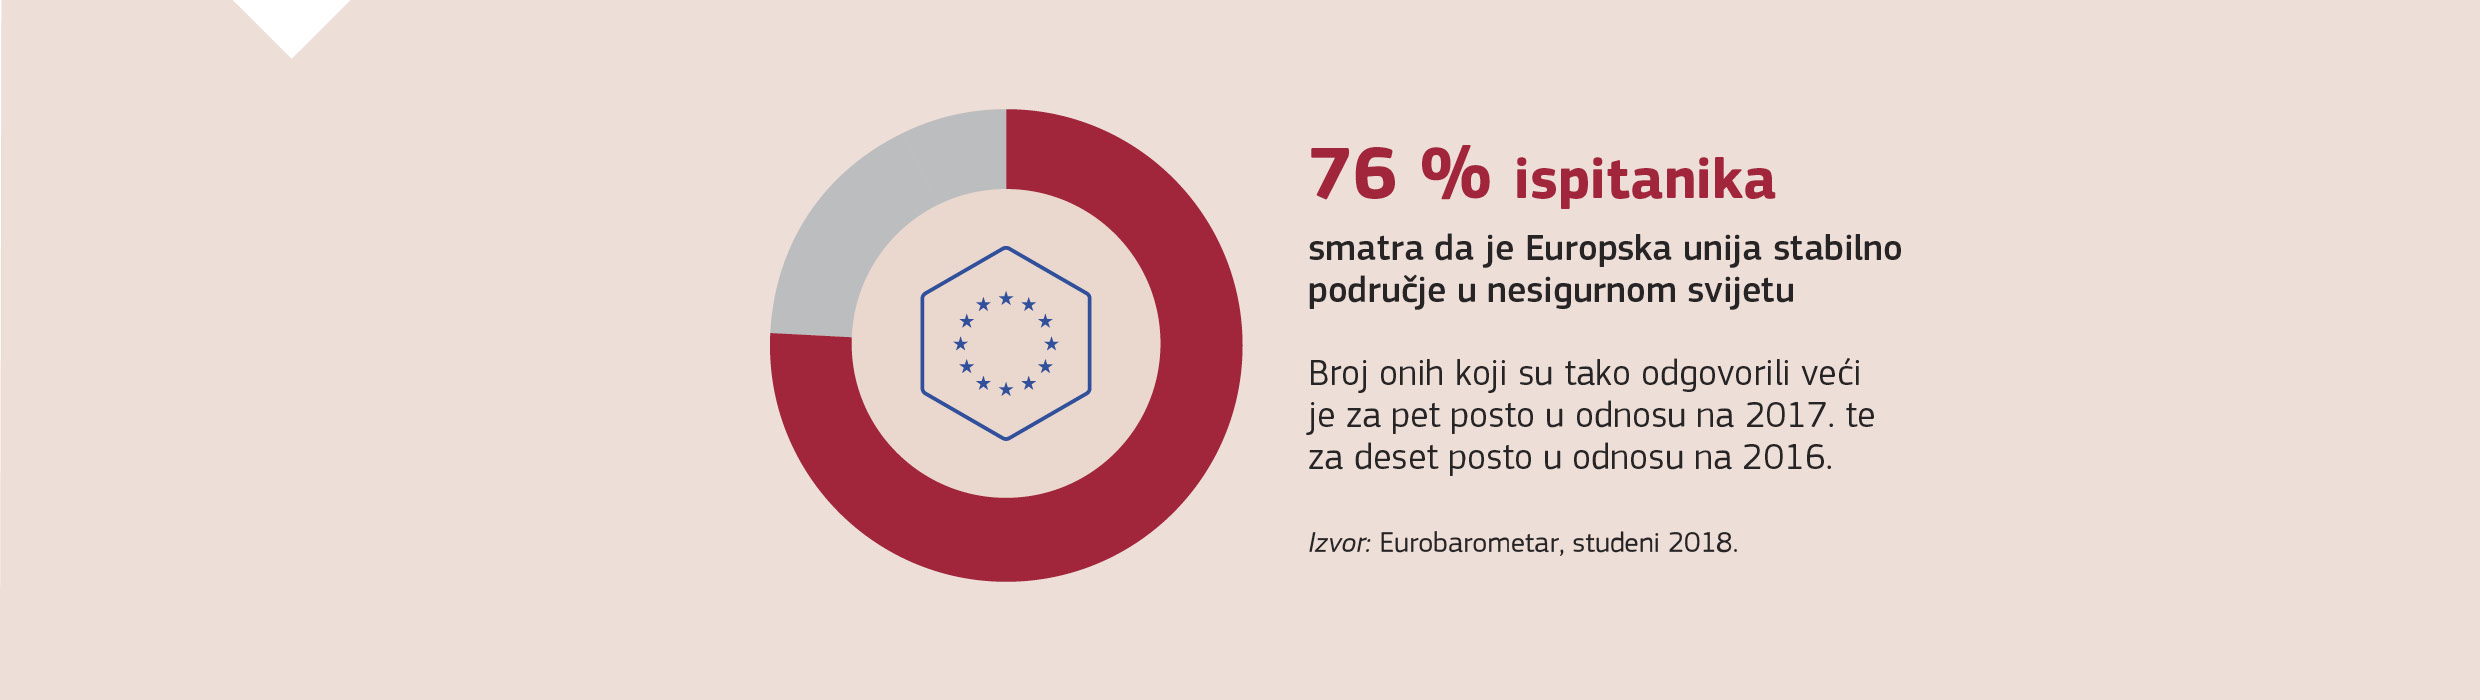 76 % ispitanika smatra da je Europska unija stabilno područje u nesigurnom svijetu Broj onih koji su tako odgovorili veći je za pet posto u odnosu na 2017. te za deset posto u odnosu na 2016.